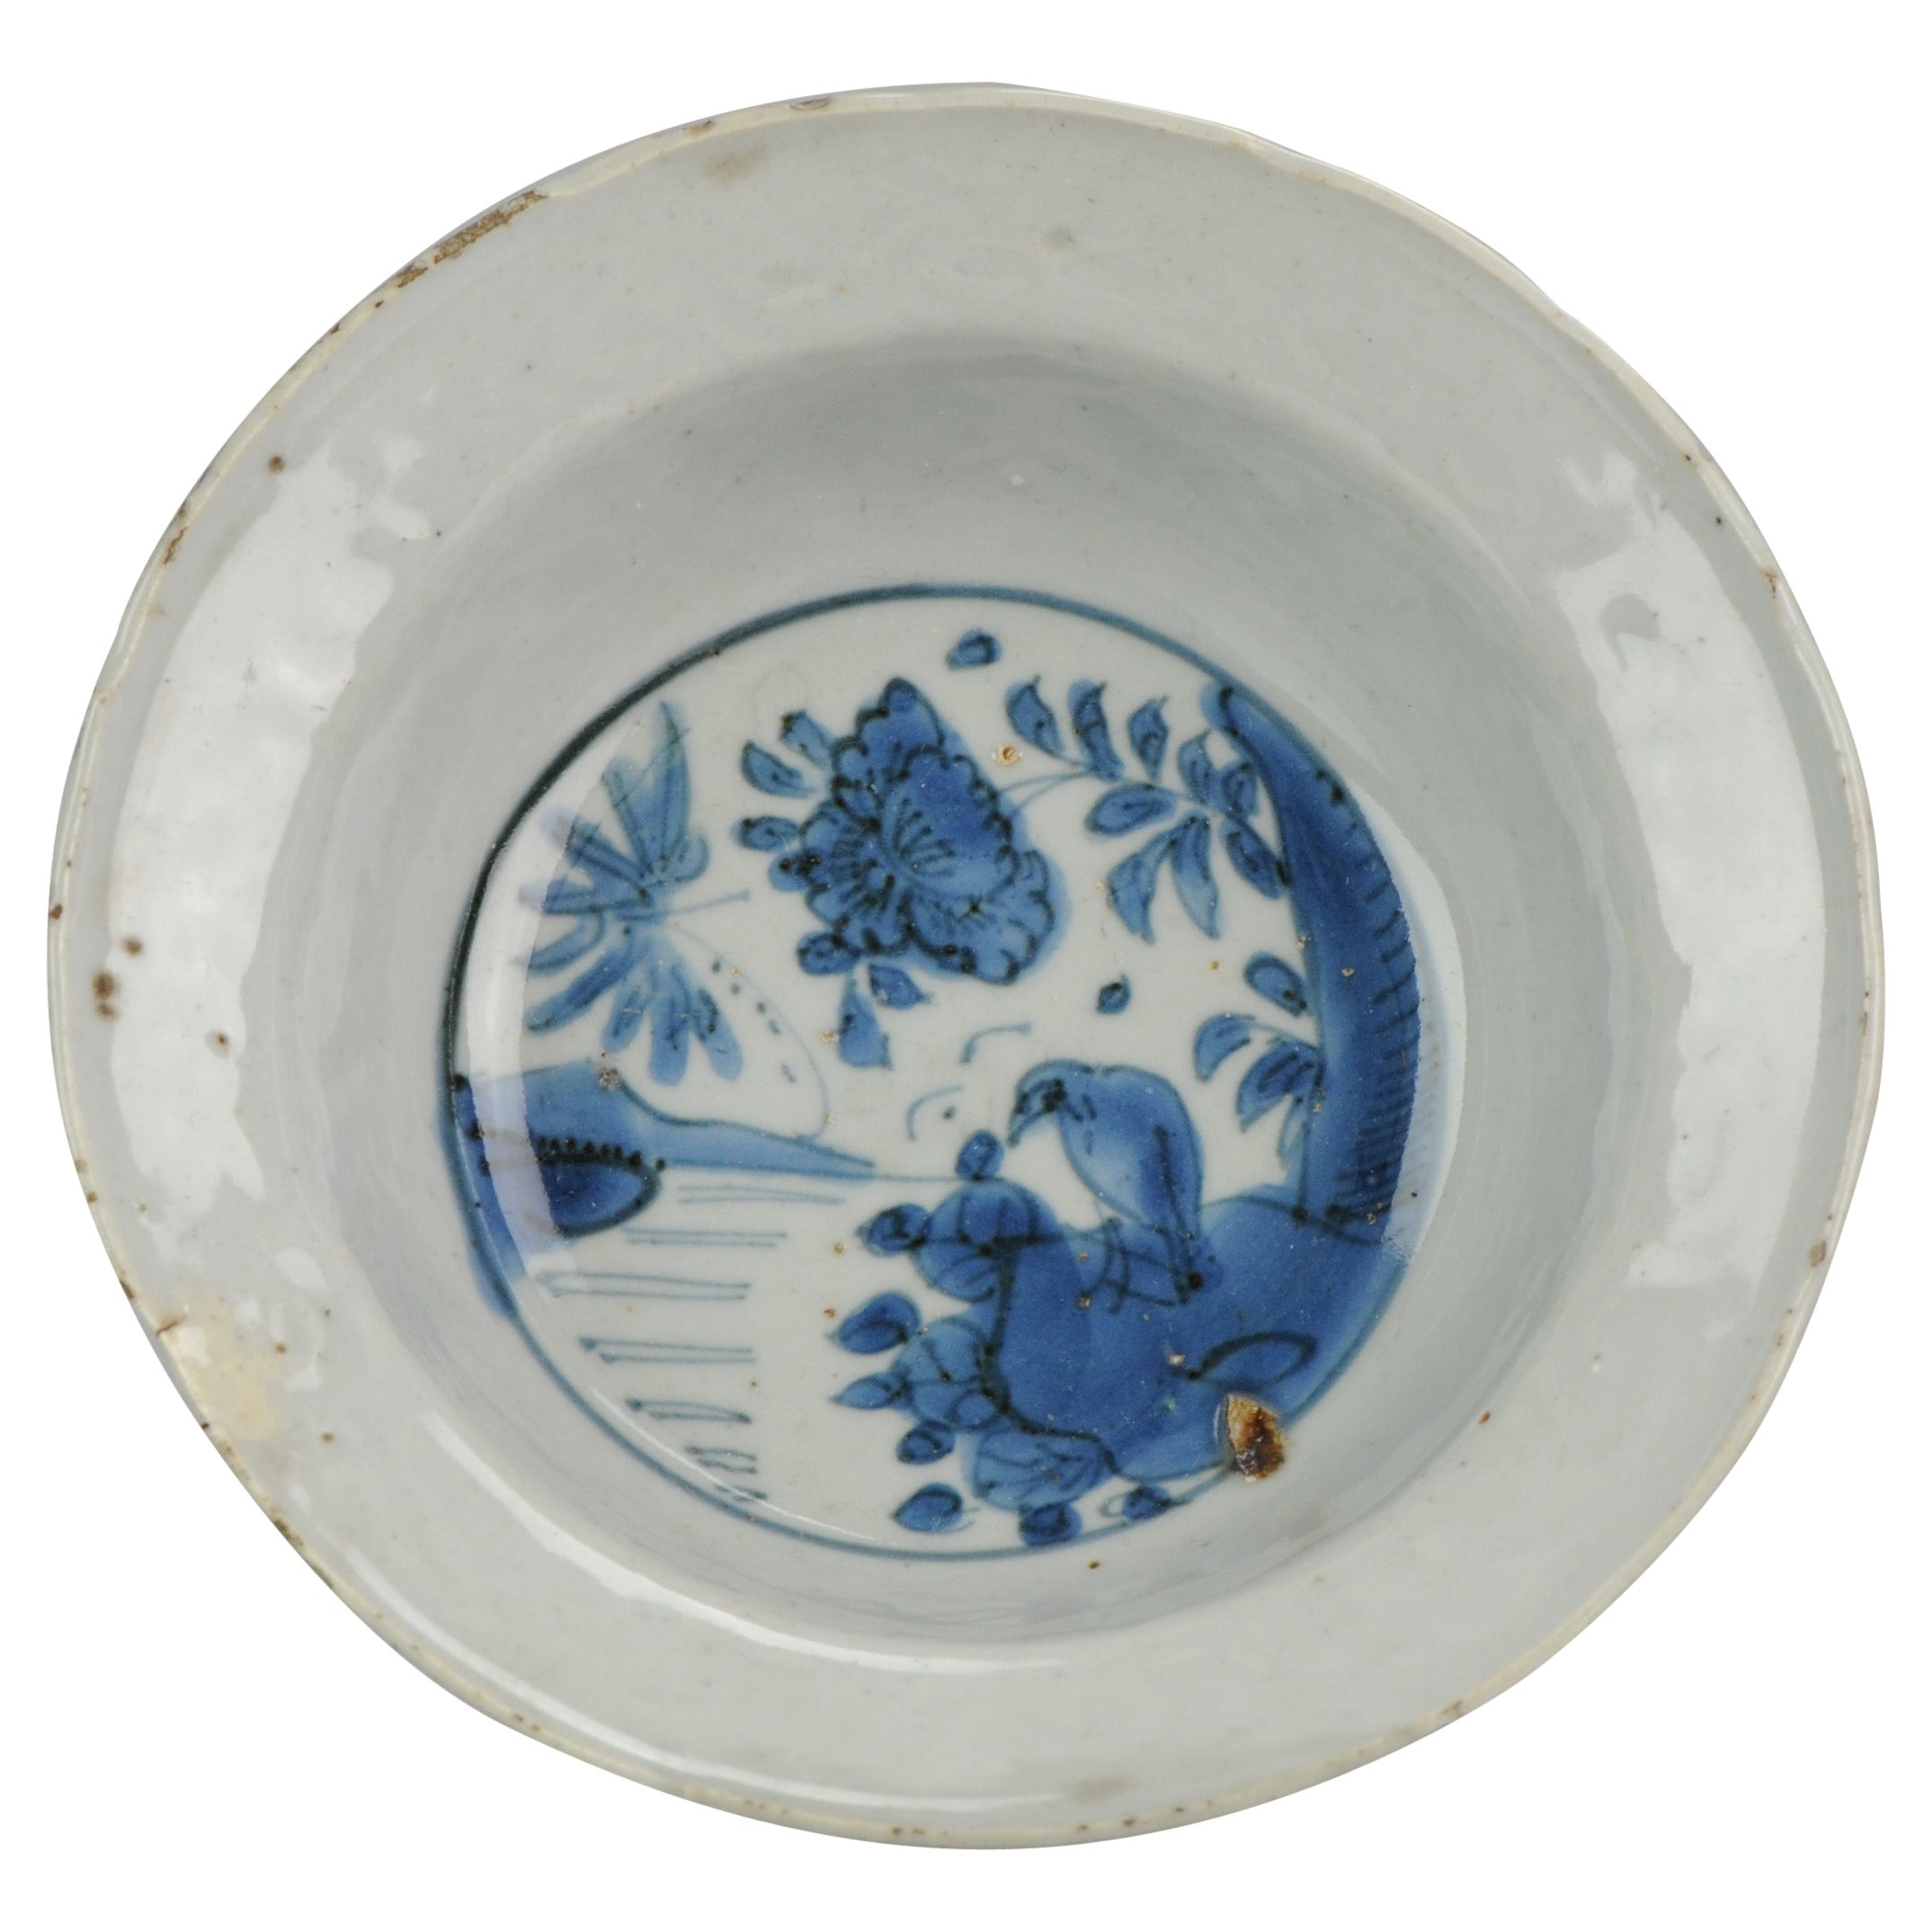 Antique Chinese Domestic Market Porcelain Plate Klapmuts Flowers, 16th Century